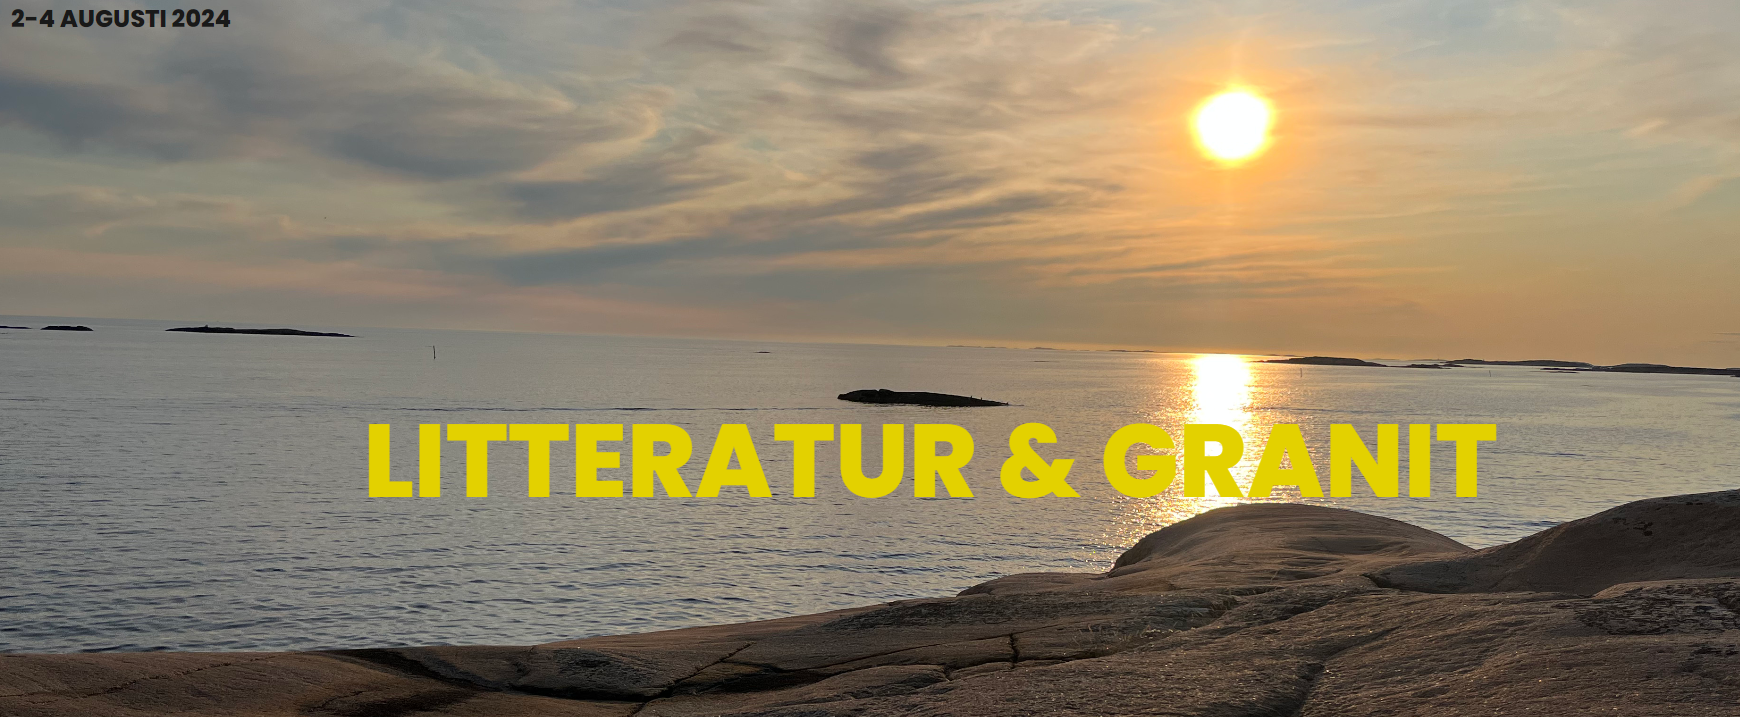 Affischen för litteraturfestivalen Litteratur och Granit med berg, sol och hav